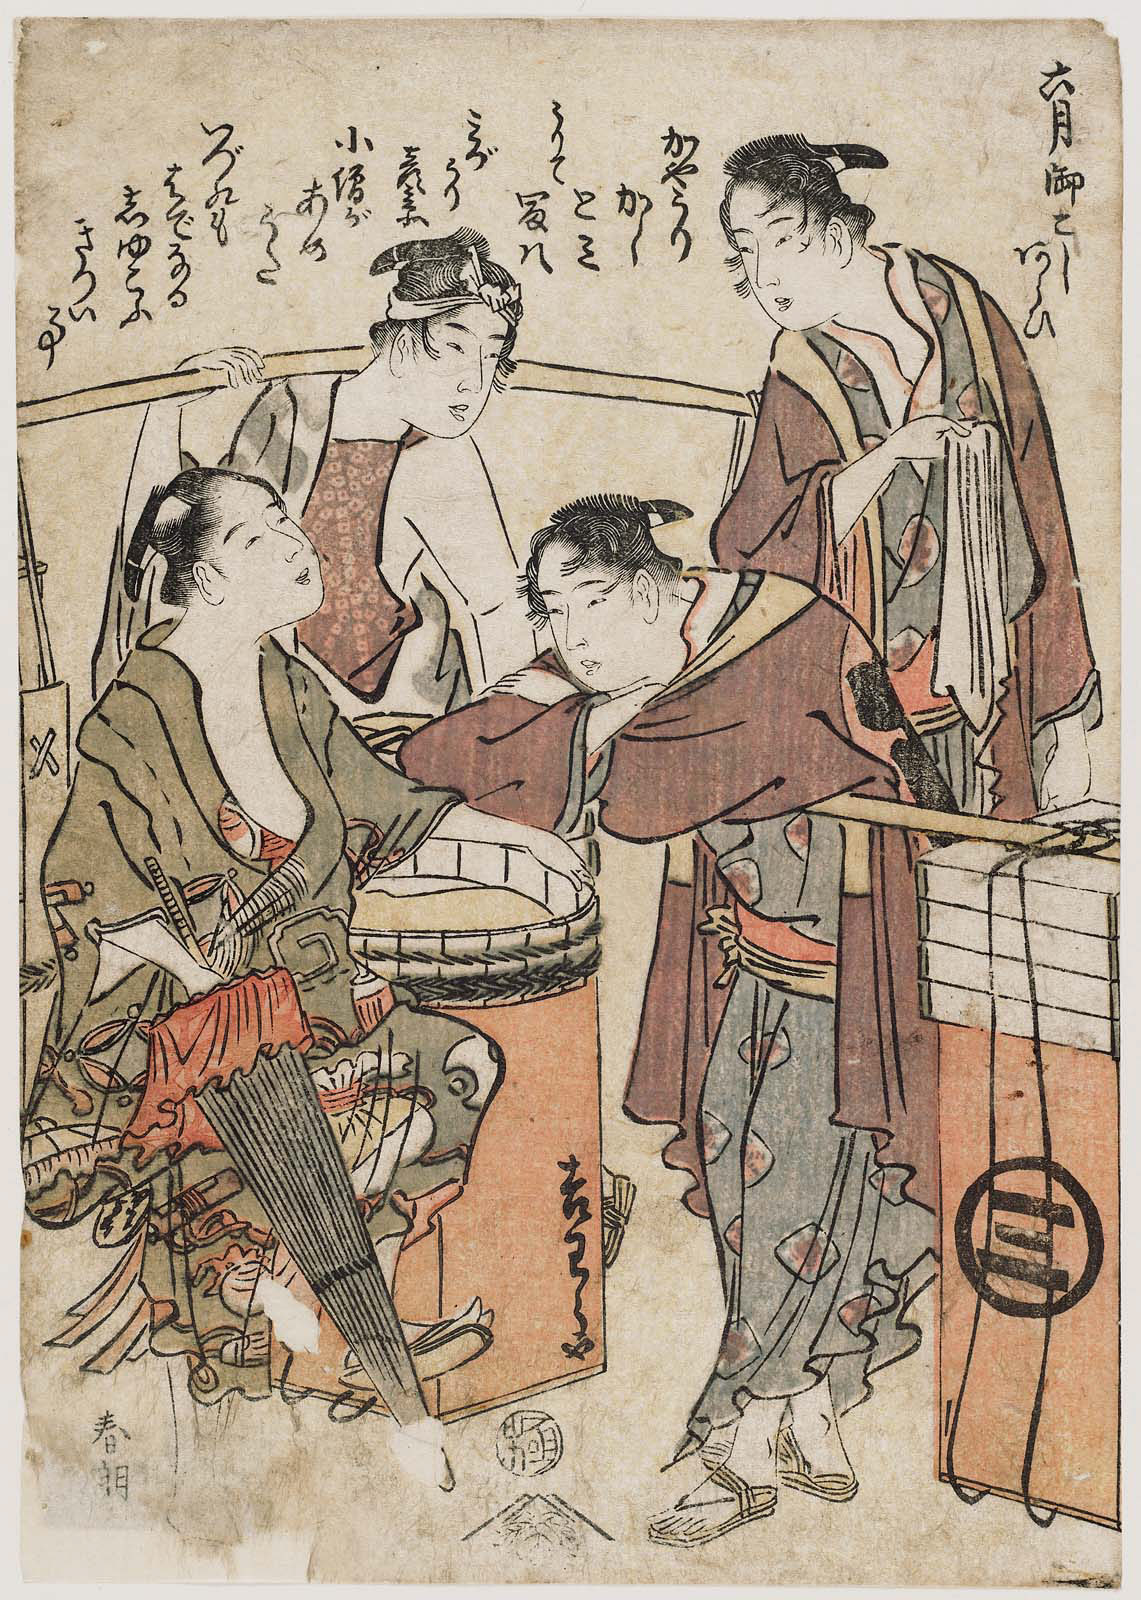 Hokusai - Sixth Month Washing the Portable Shrine - Shunro Period